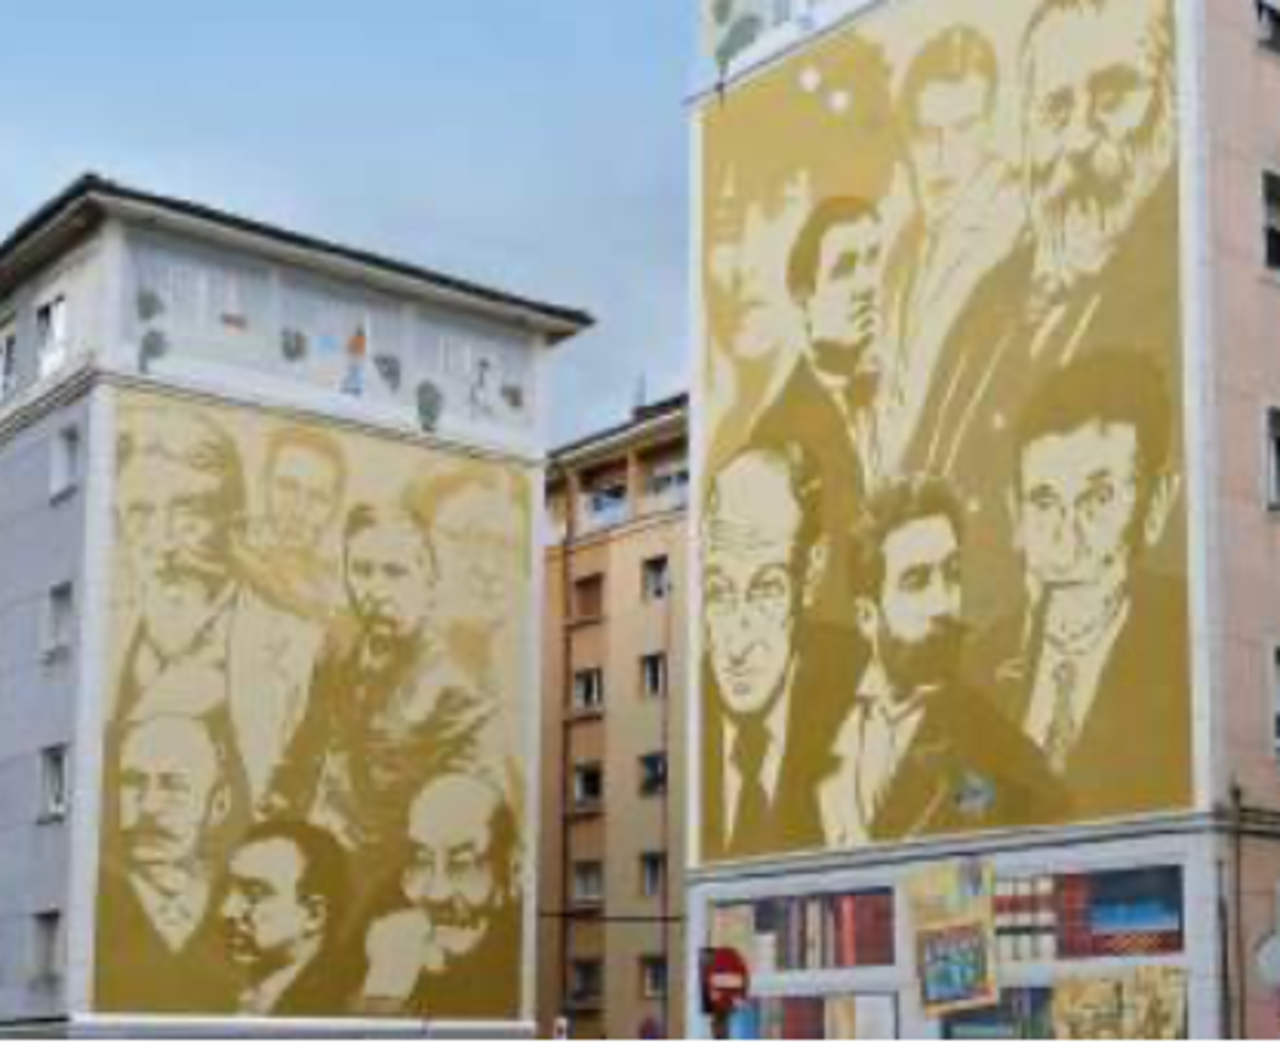 "Los escritores y Cantabria". Mural de alumnos de la escuela y talleres